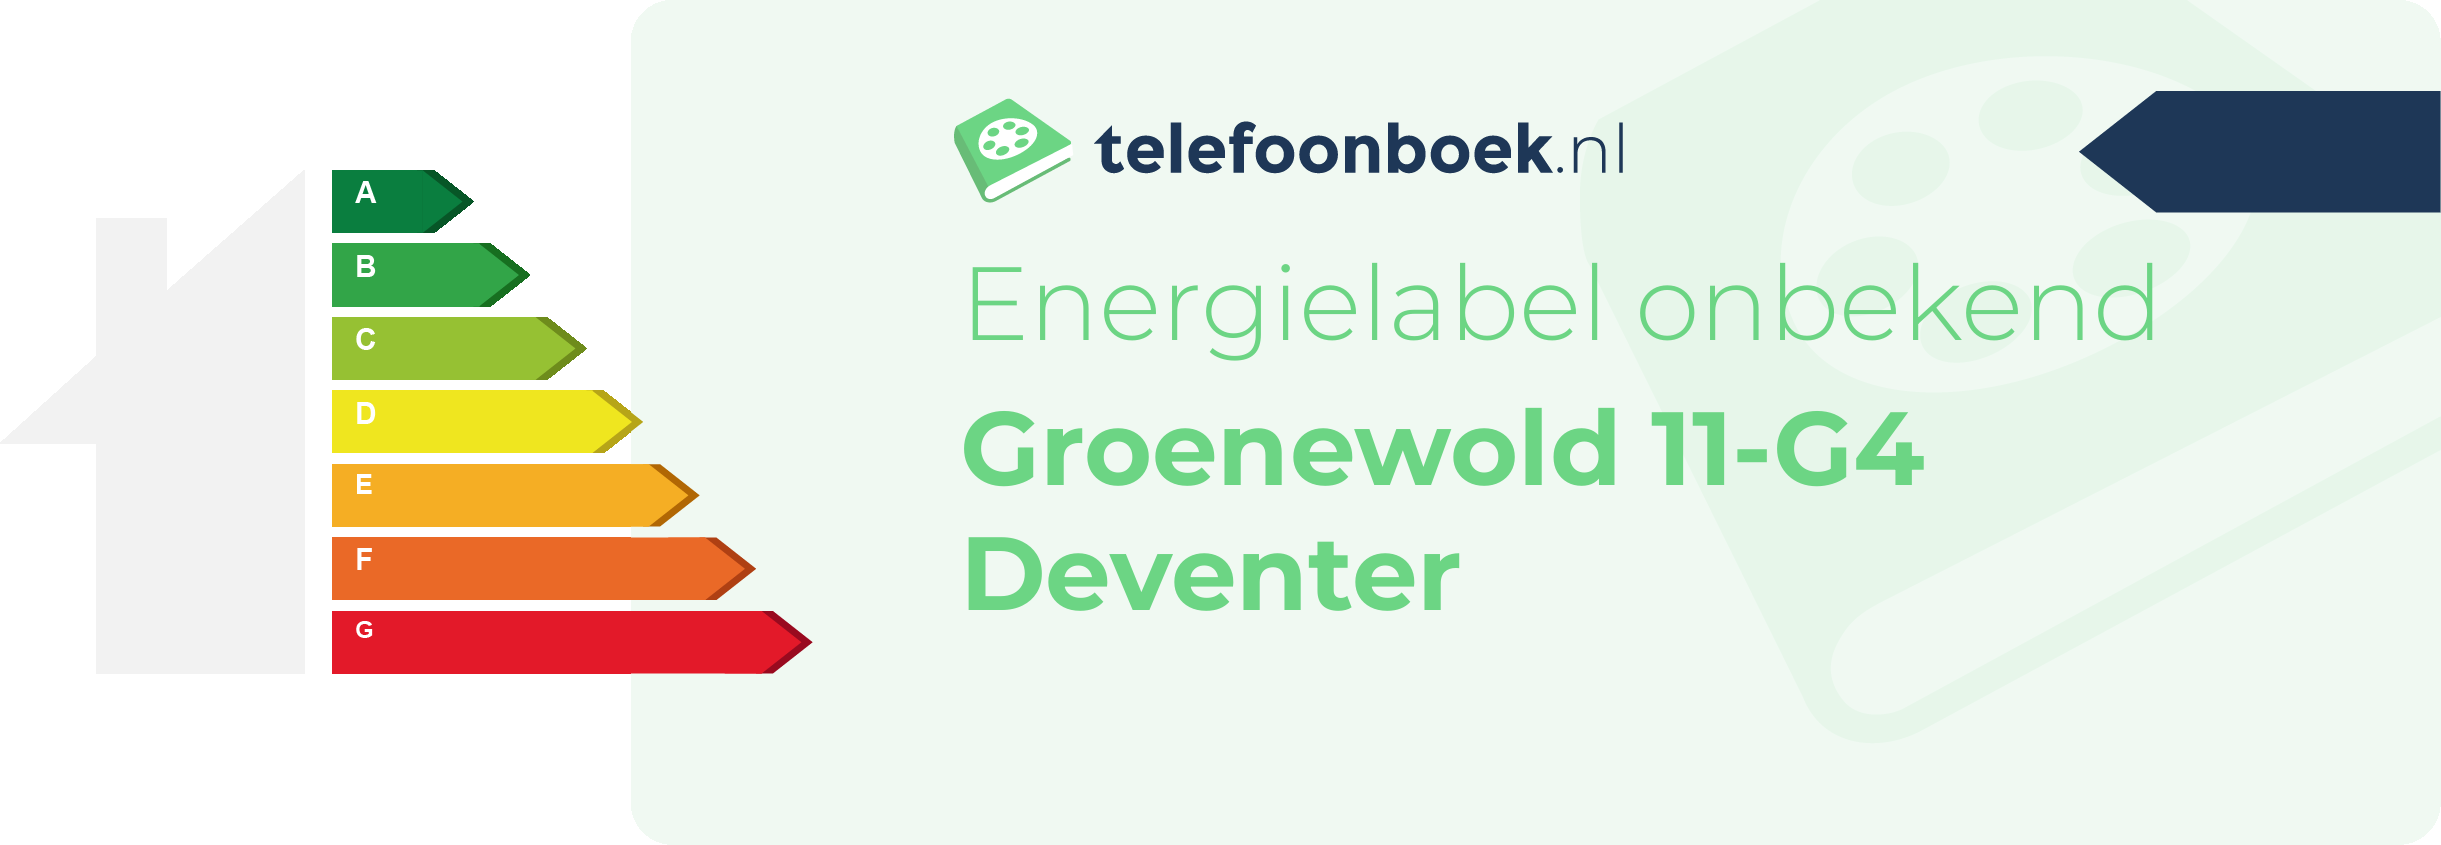 Energielabel Groenewold 11-G4 Deventer